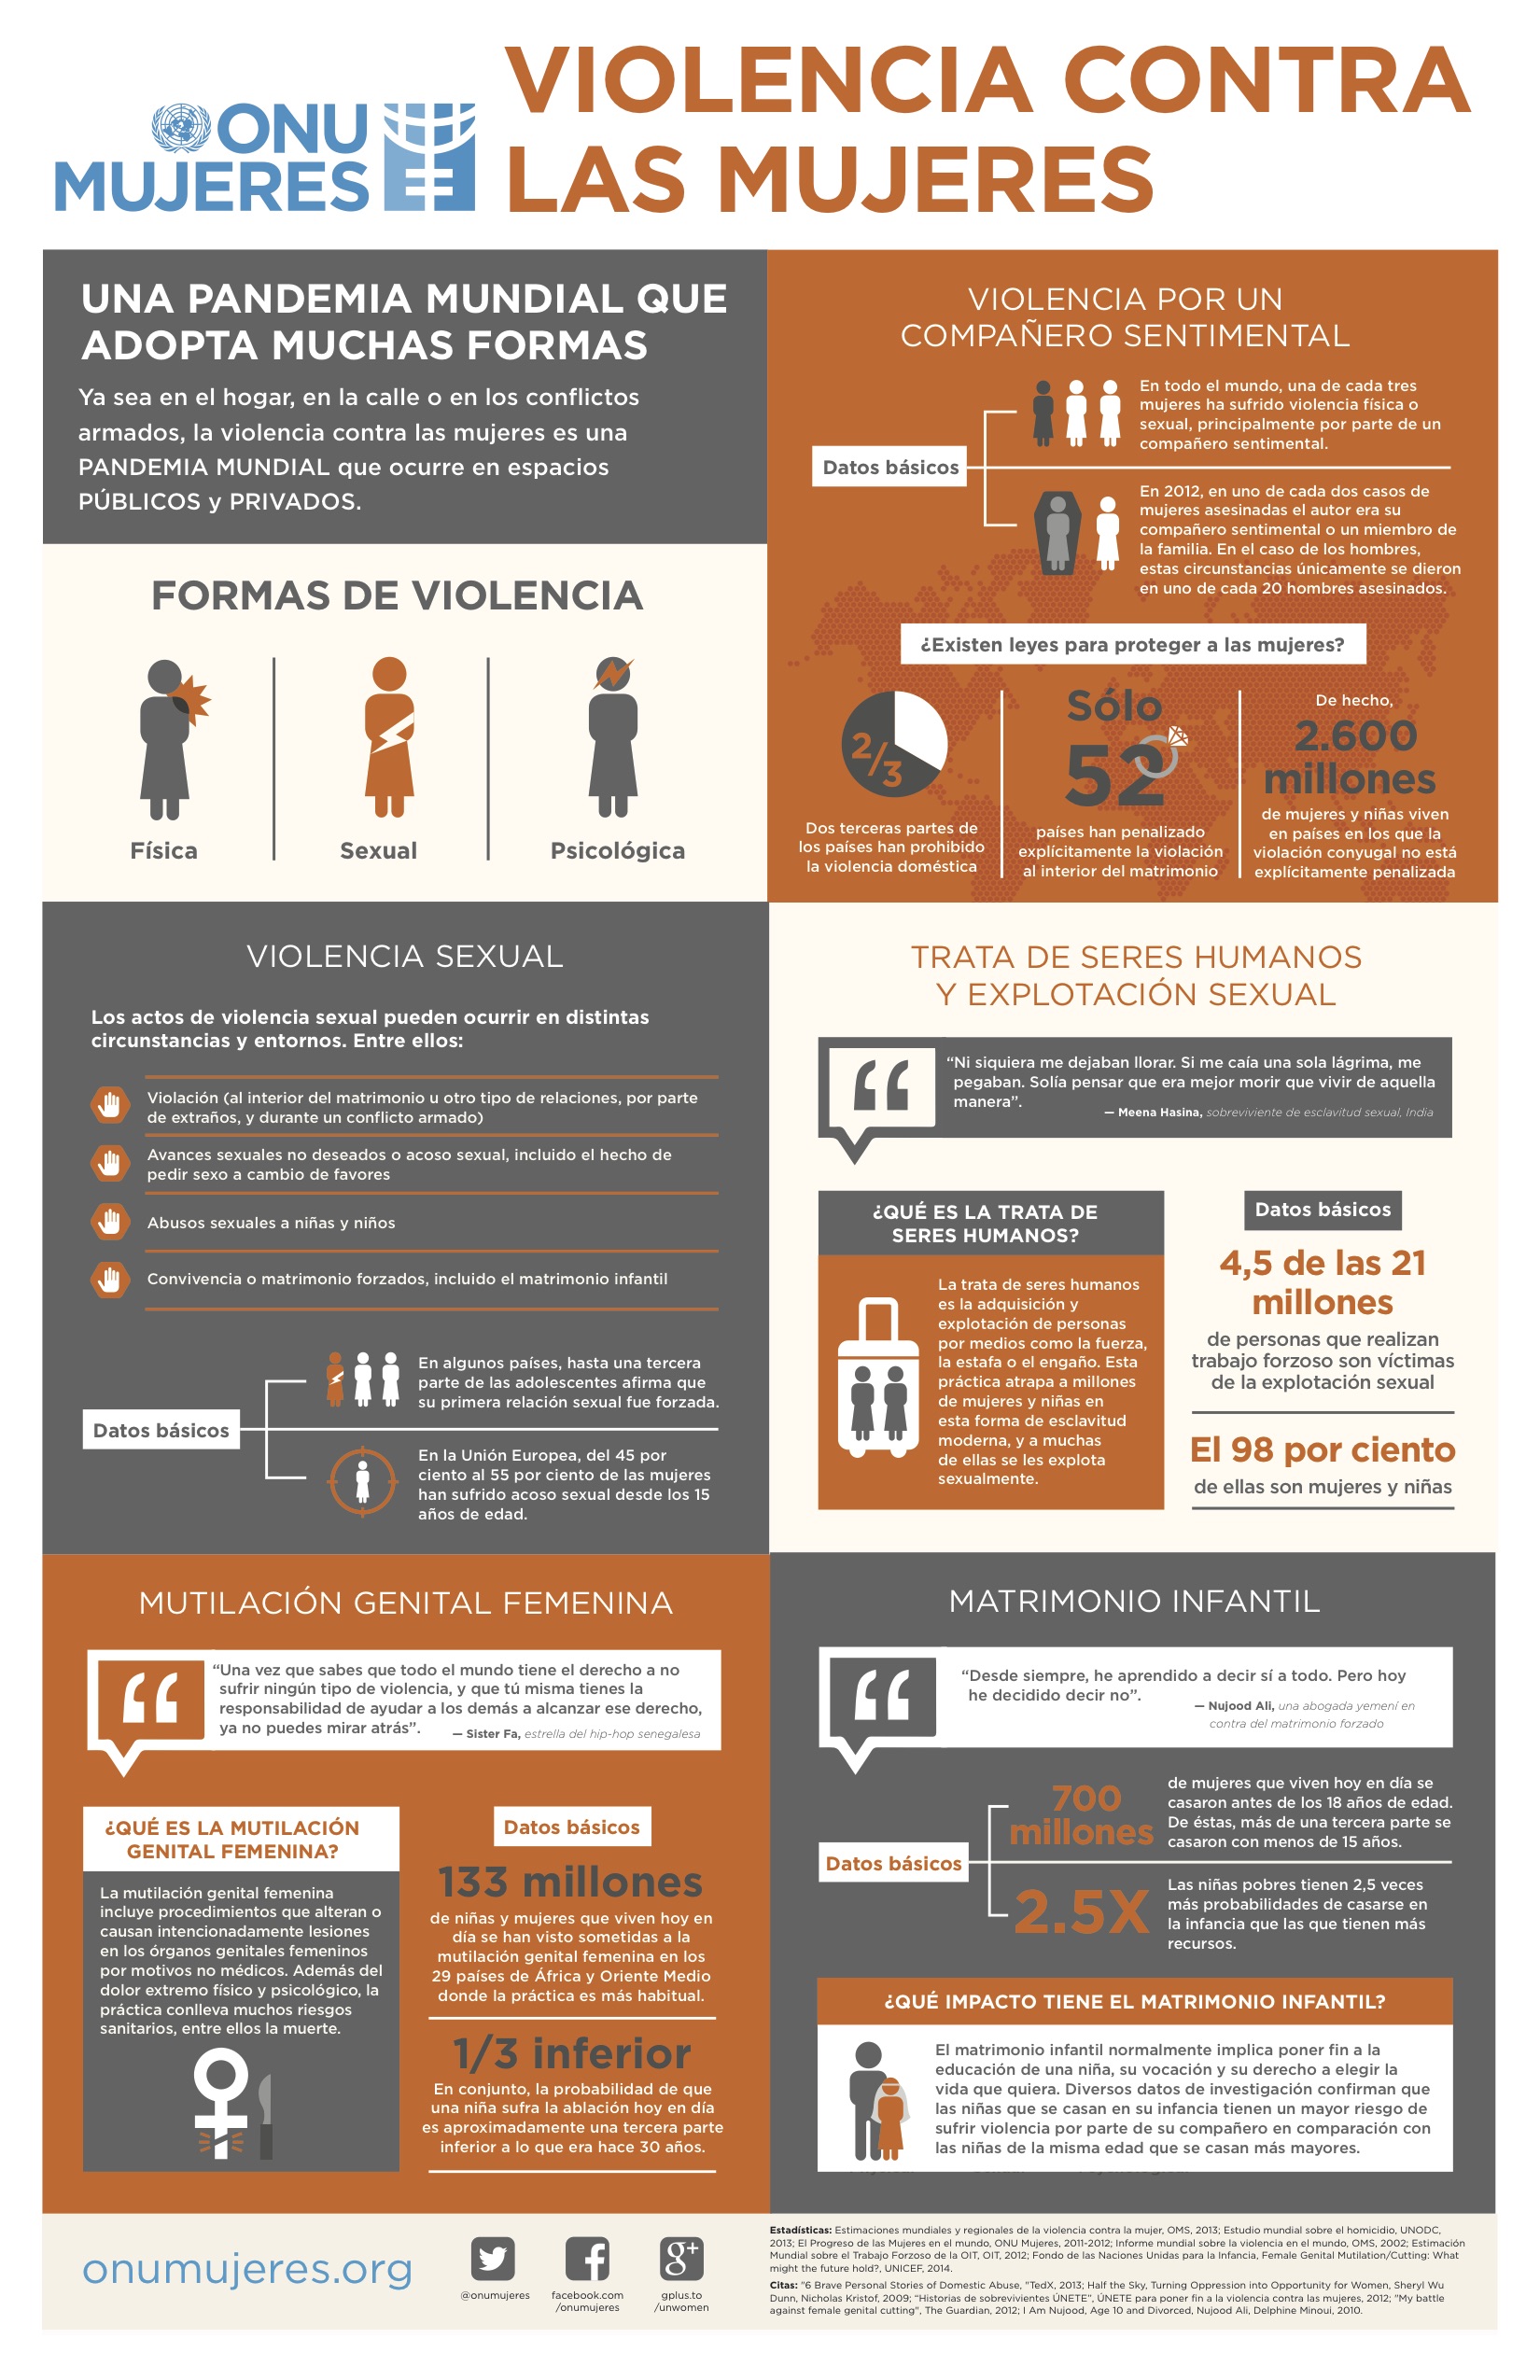 Violencia contra las mujeres. Fuente: UNwoman